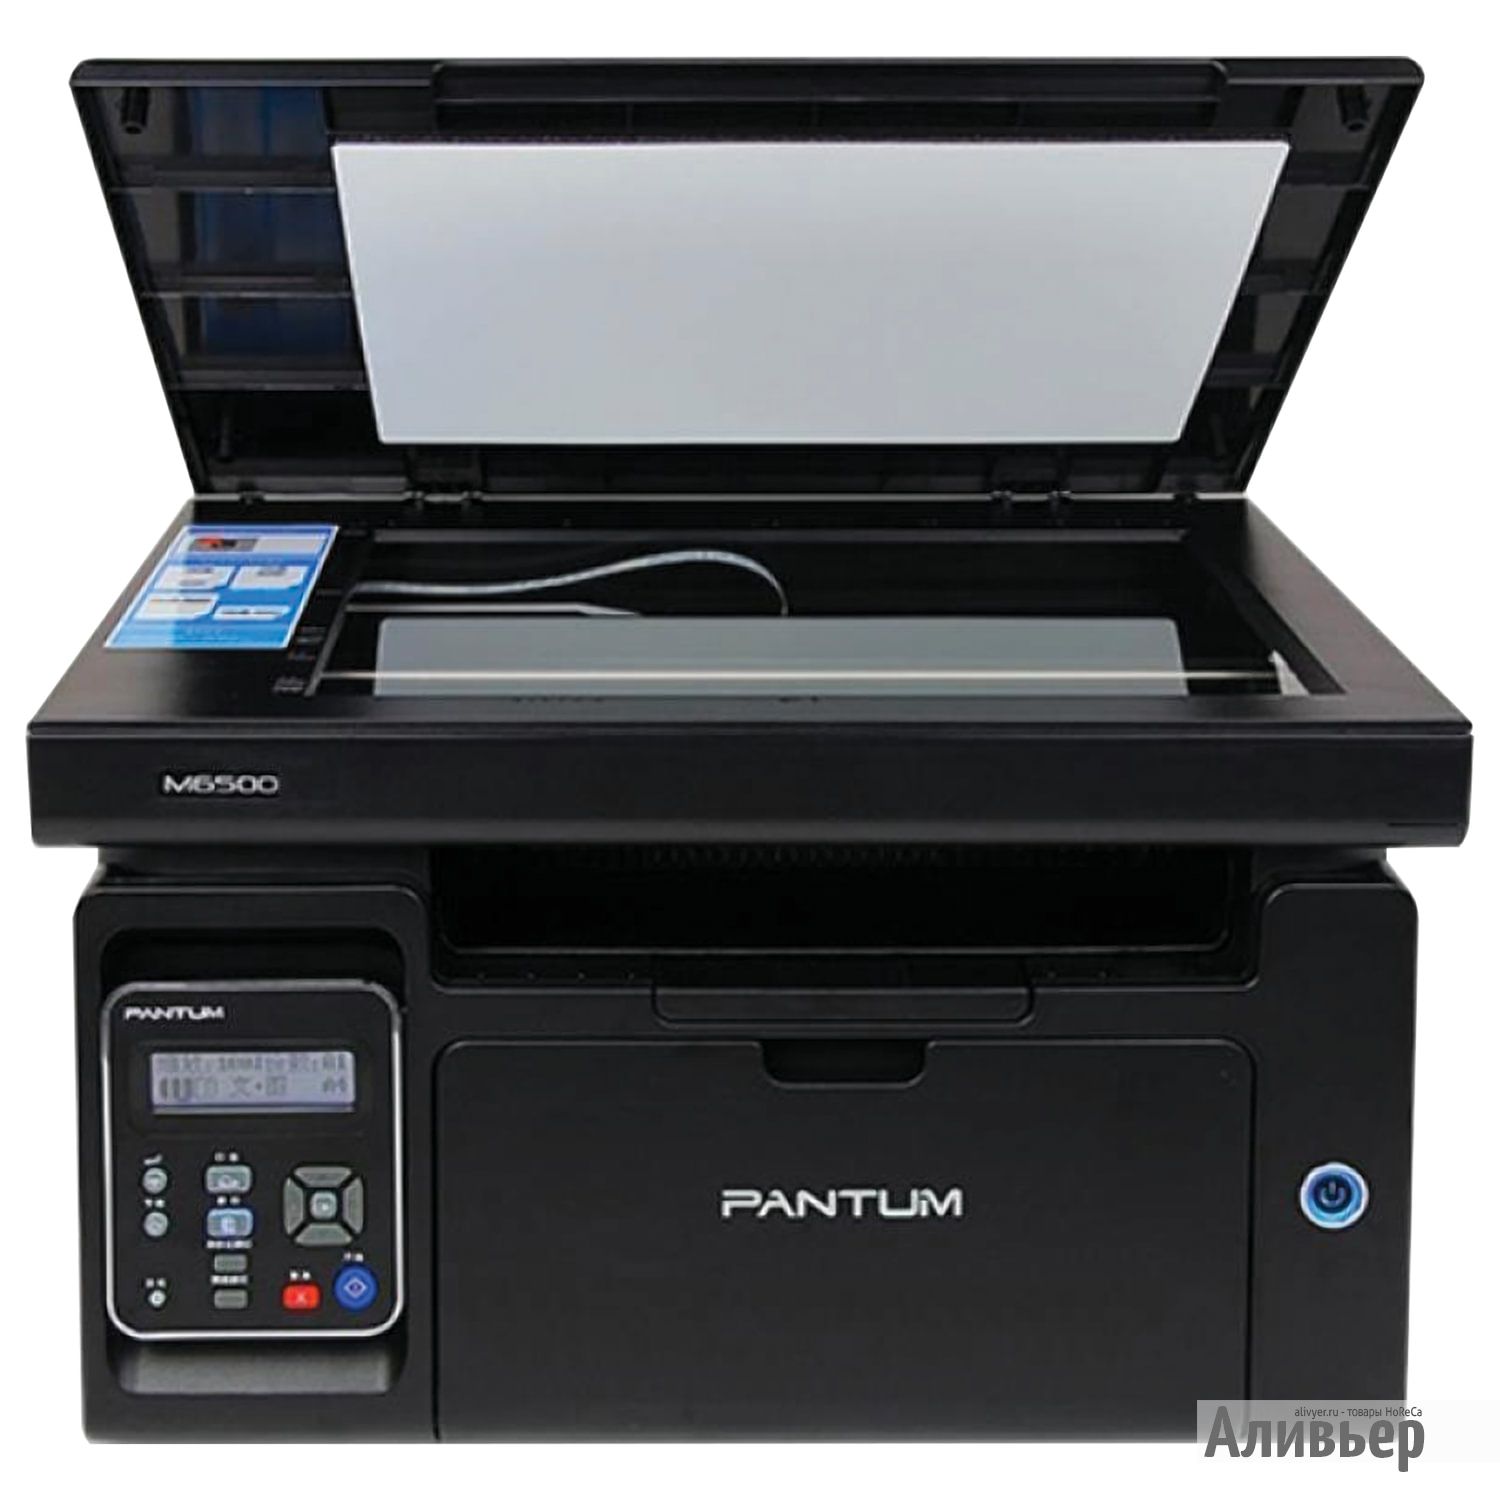 Принтер m6500 series. Pantum m6500w. Принтер Pantum m6500. МФУ лазерное Pantum m6500w. МФУ Pantum m6500 (m6500).